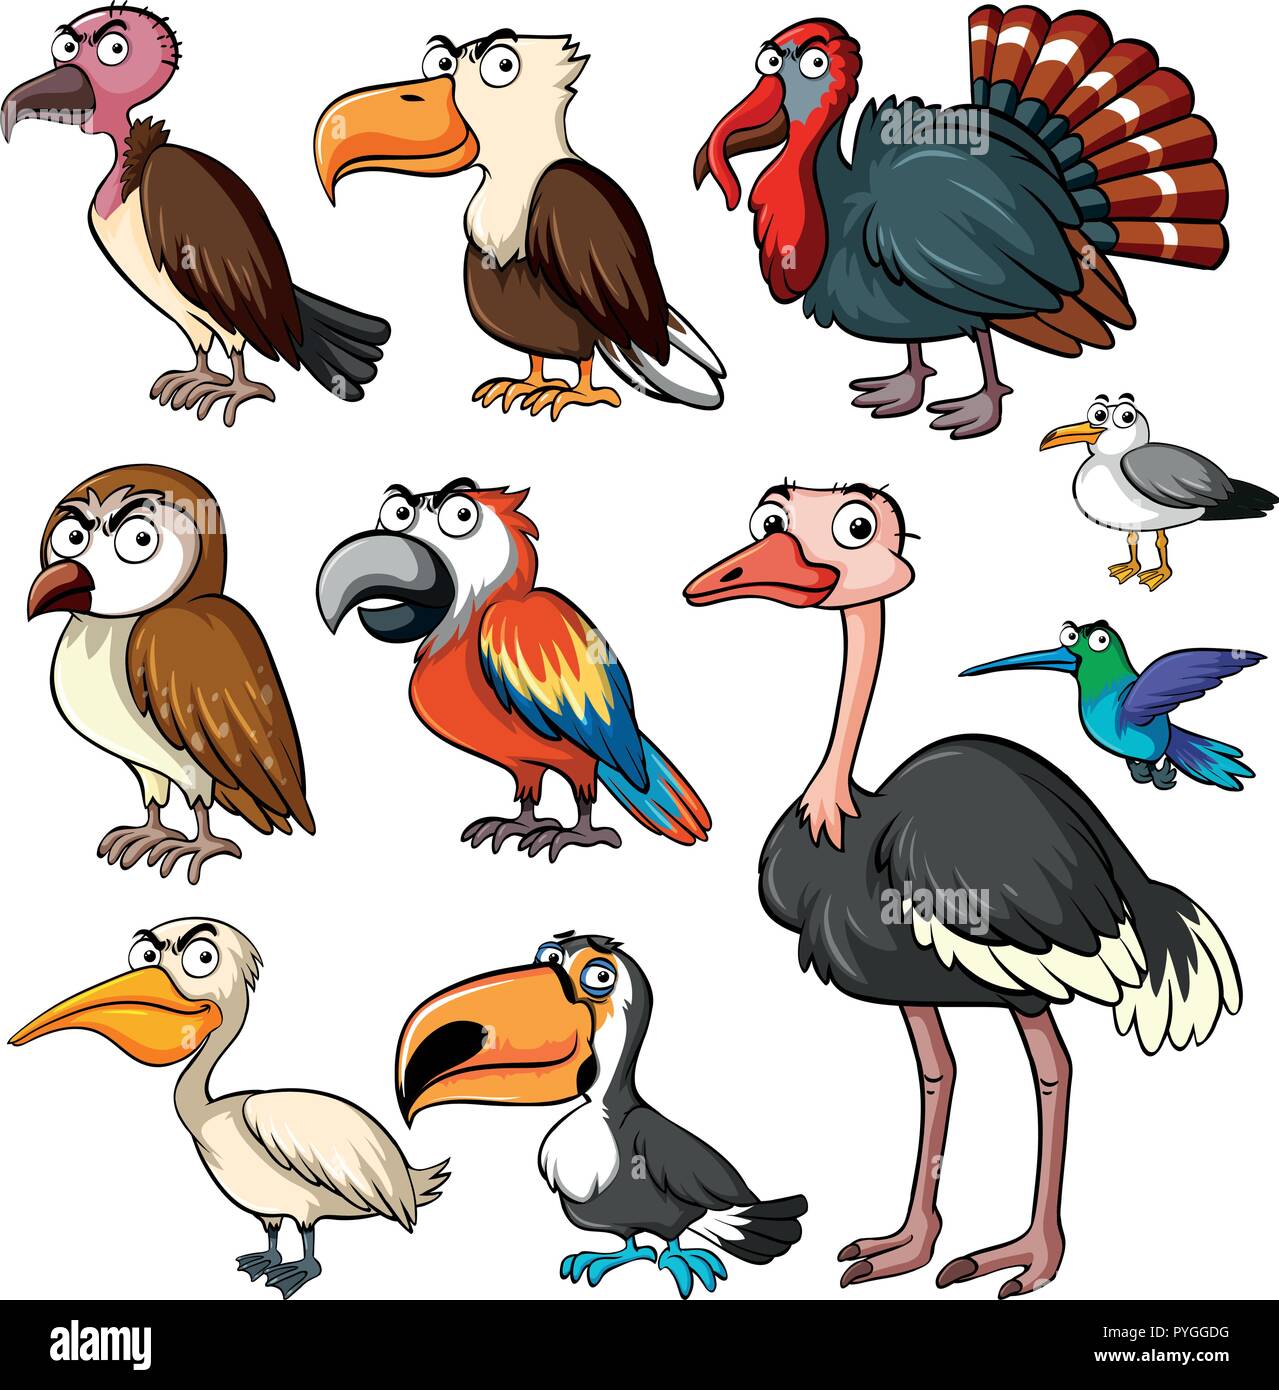 Différents types d'oiseaux sauvages à l'illustration Illustration de Vecteur